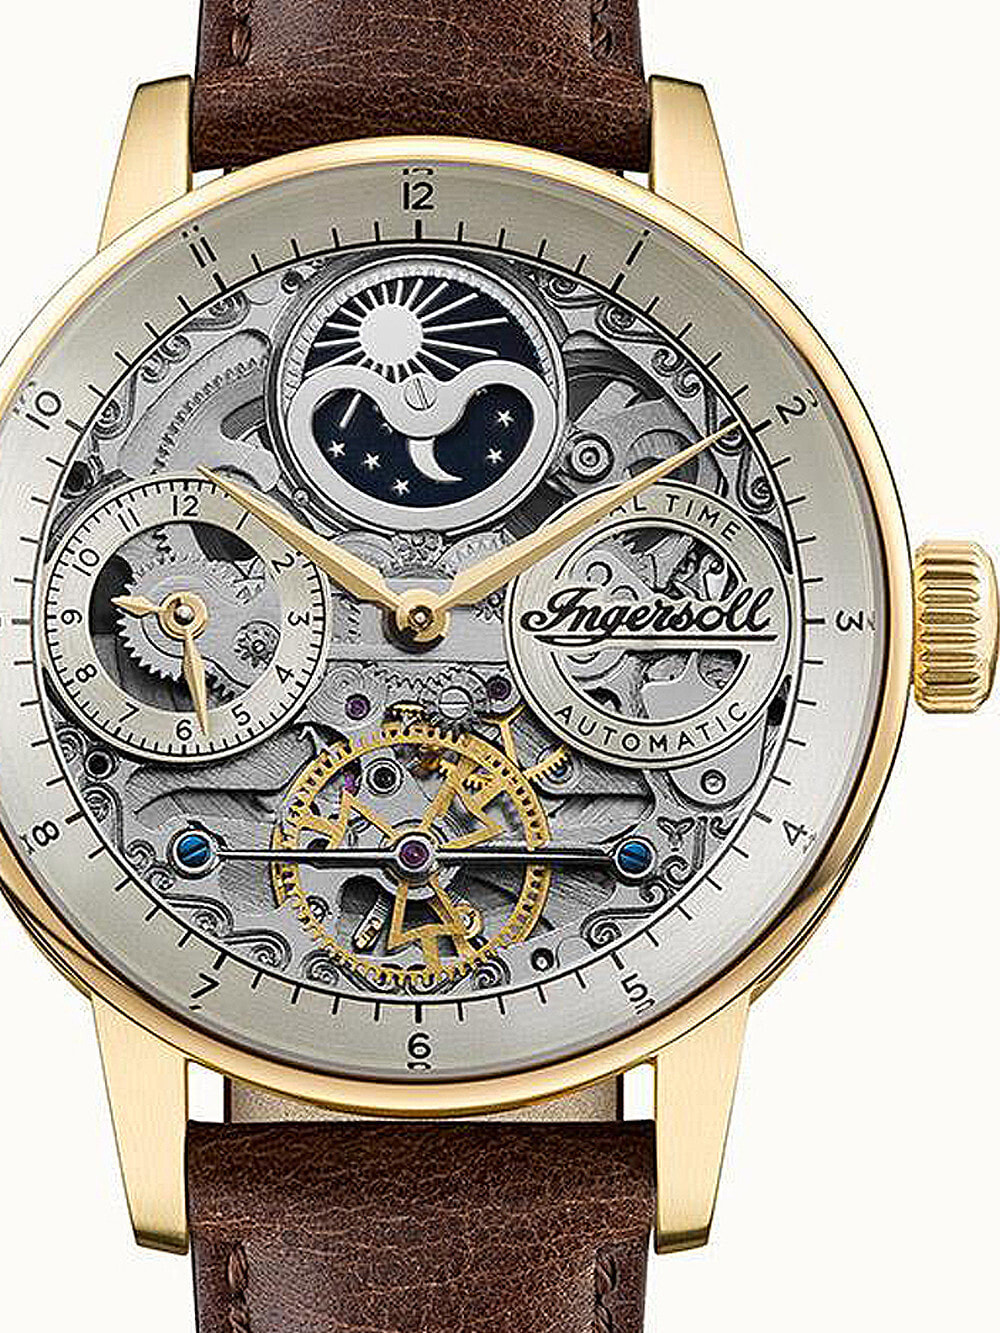 Мужские наручные часы с кожаным коричневым ремешком Ingersoll I07704 The Jazz automatic 42mm 5ATM